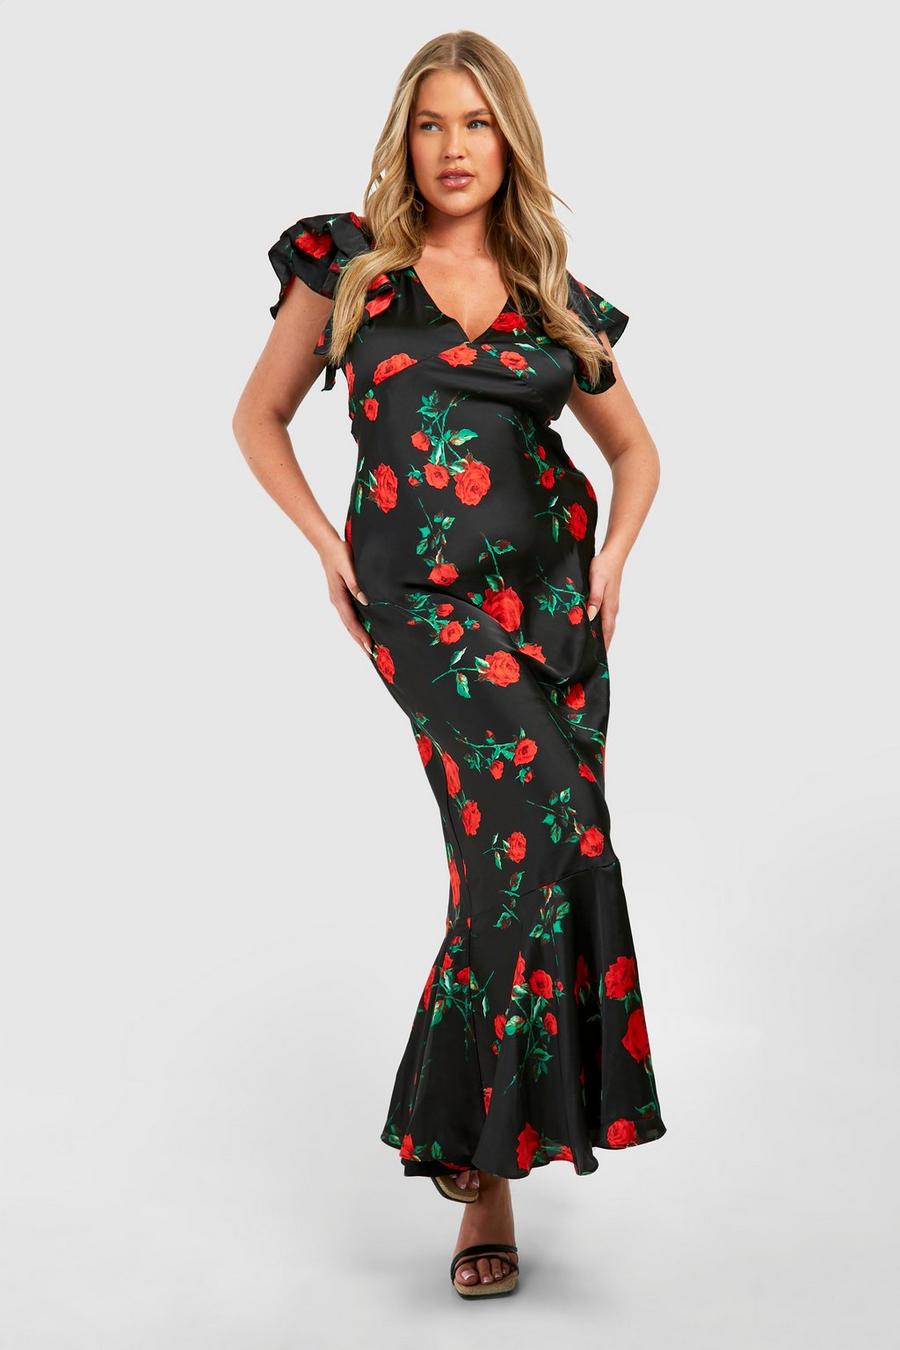 Skims Rose Print Dress